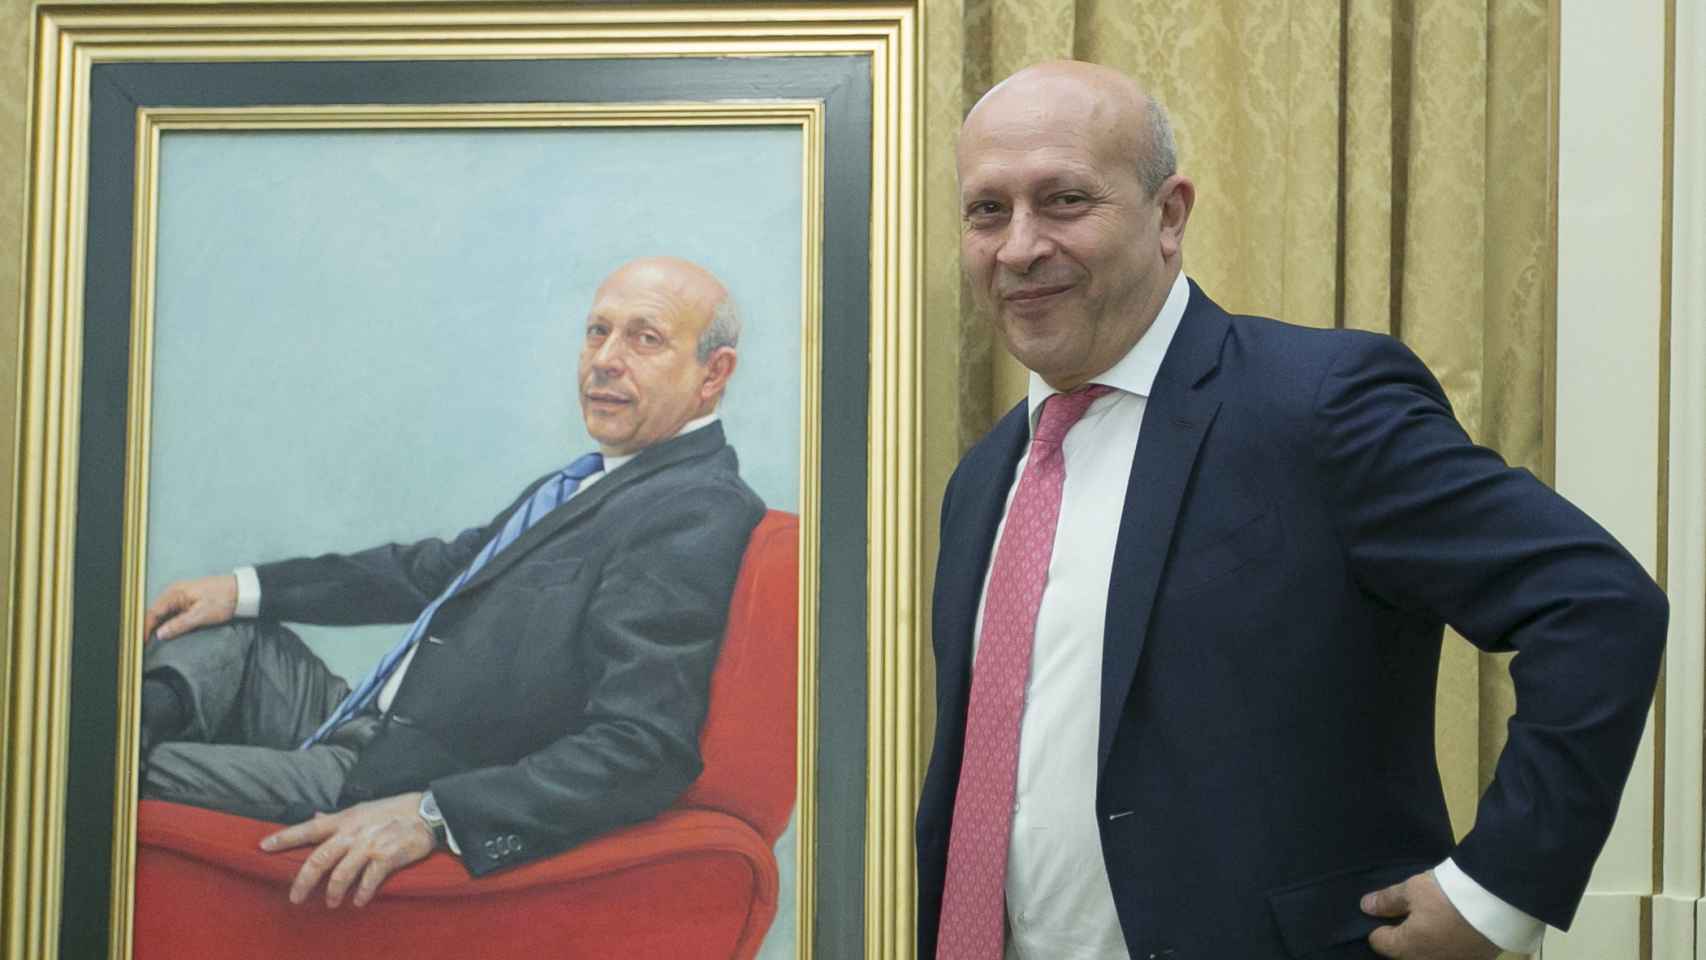 El ex ministro Wert posa ante su retrato, el martes en Madrid